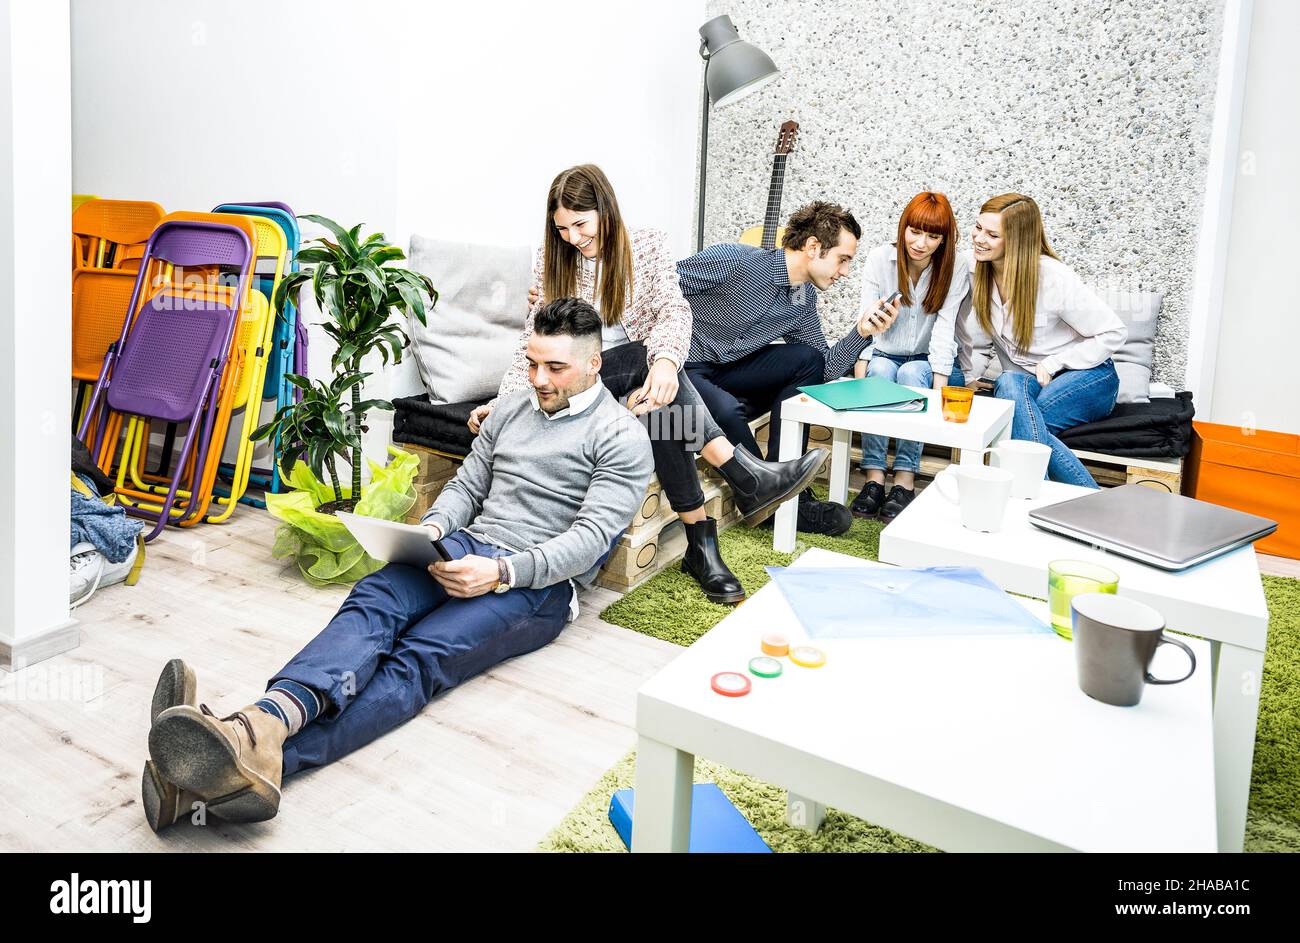 Jóvenes trabajadores empleados que se han roto en la oficina de inicio - Recursos humanos concepto de negocio con emprendedores creativos que se divierten juntos Foto de stock